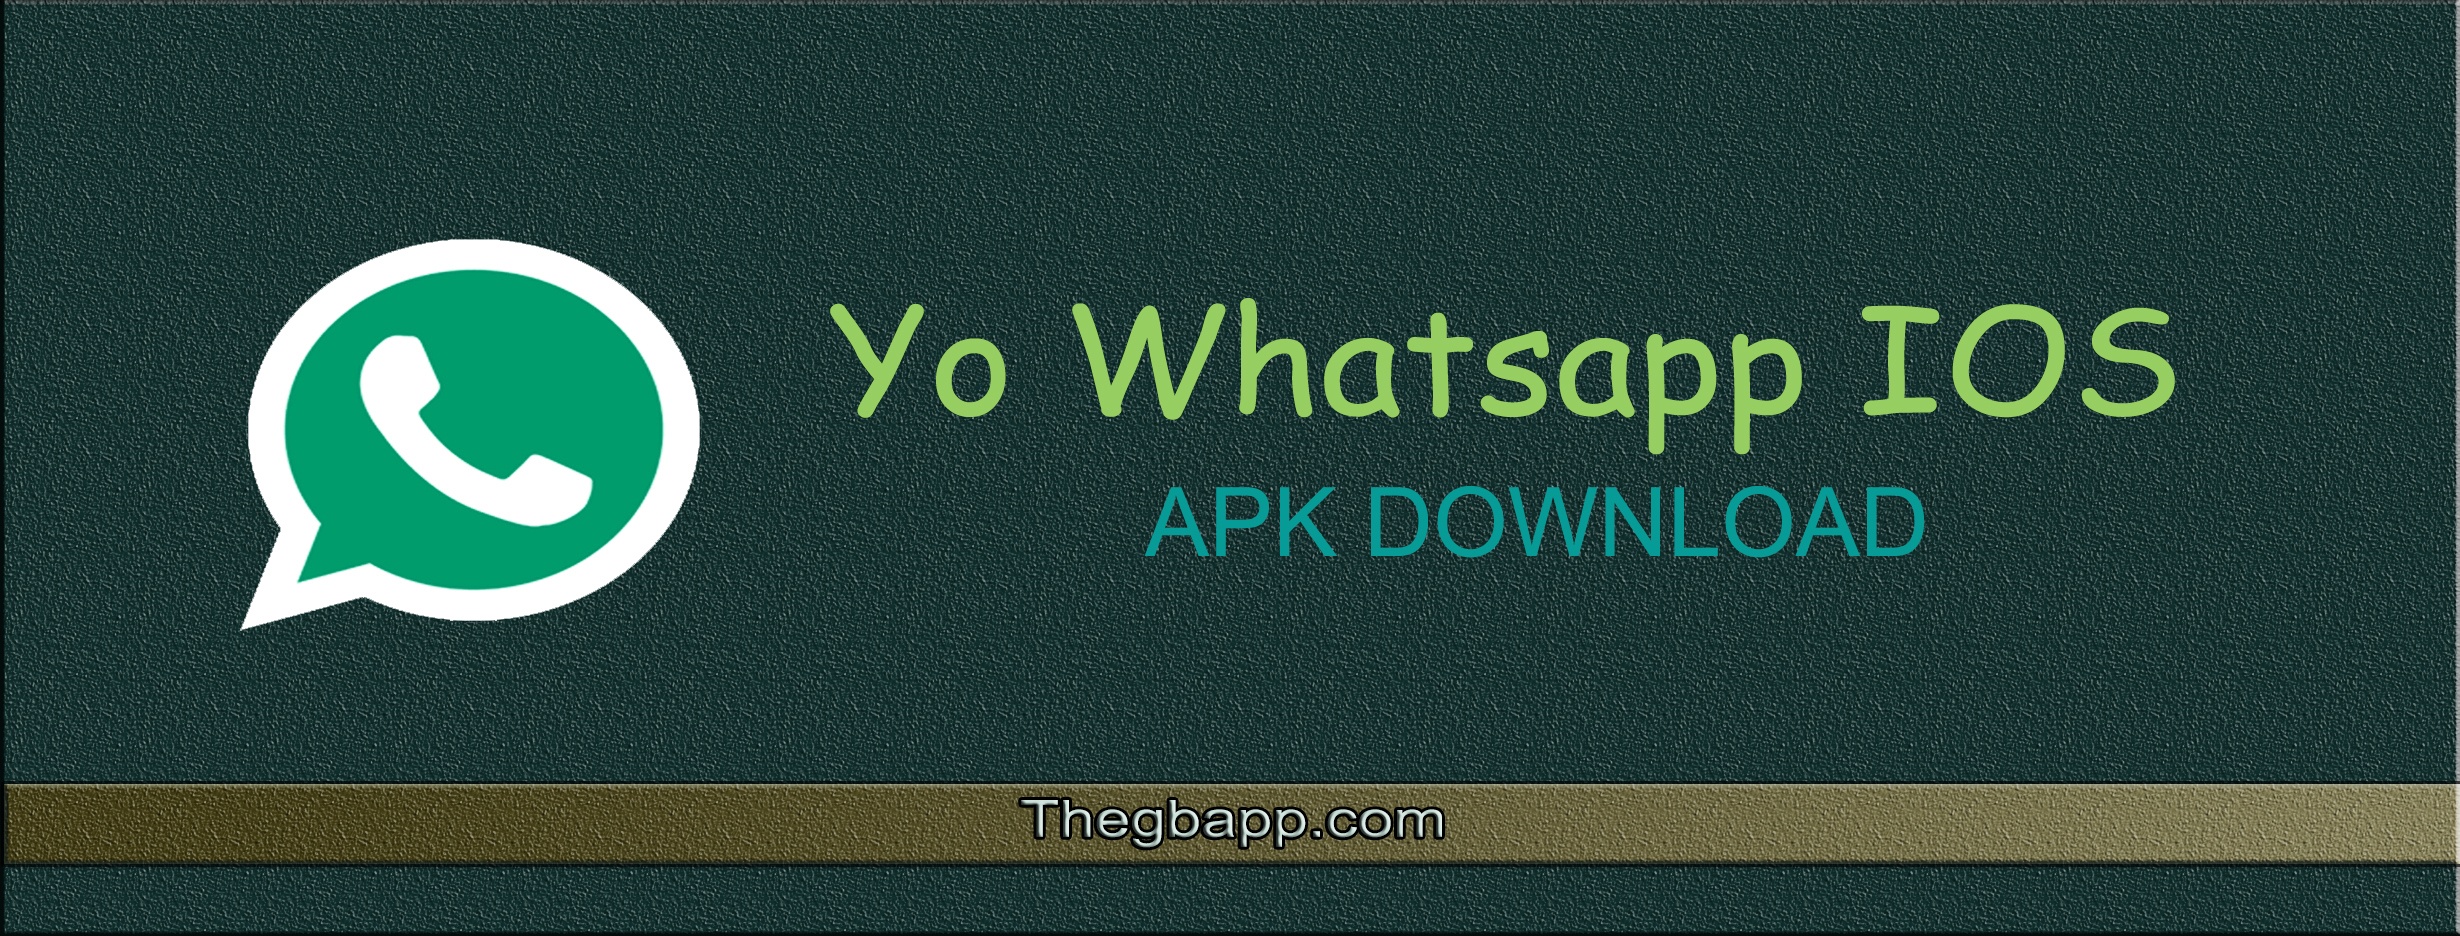 yo whatsapp app download